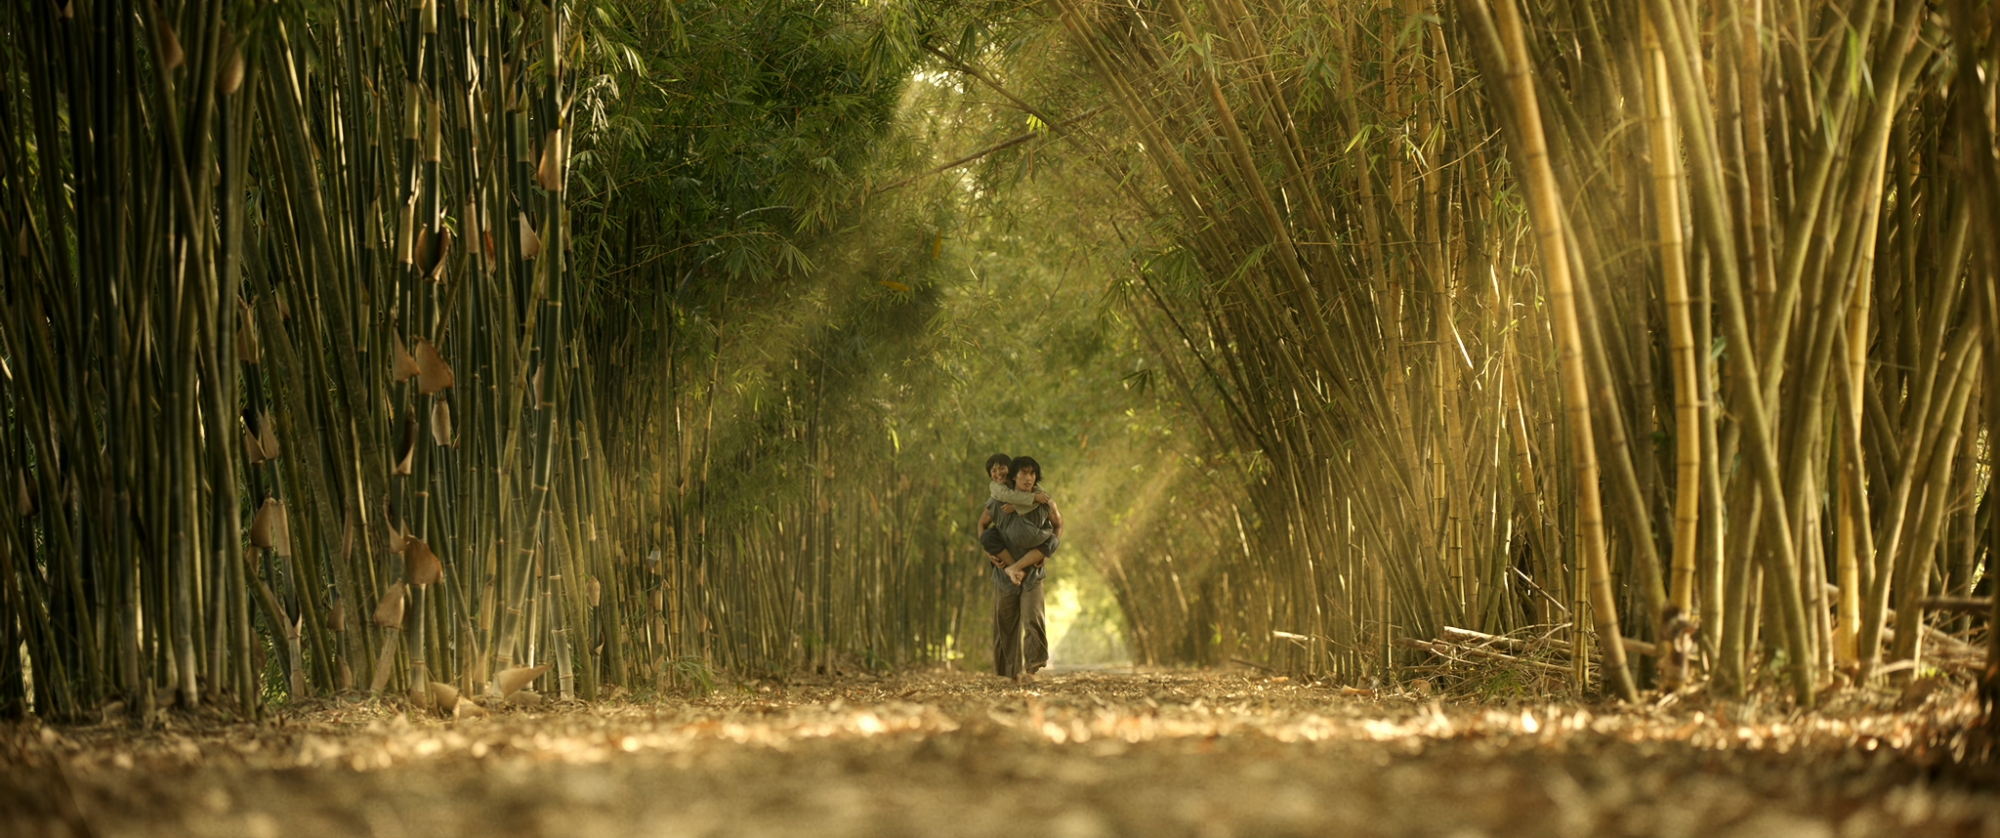 Cảnh Út Lục Lâm và bé An đi dưới những luỹ tre xanh khiến Tuấn Trần ấn tượng